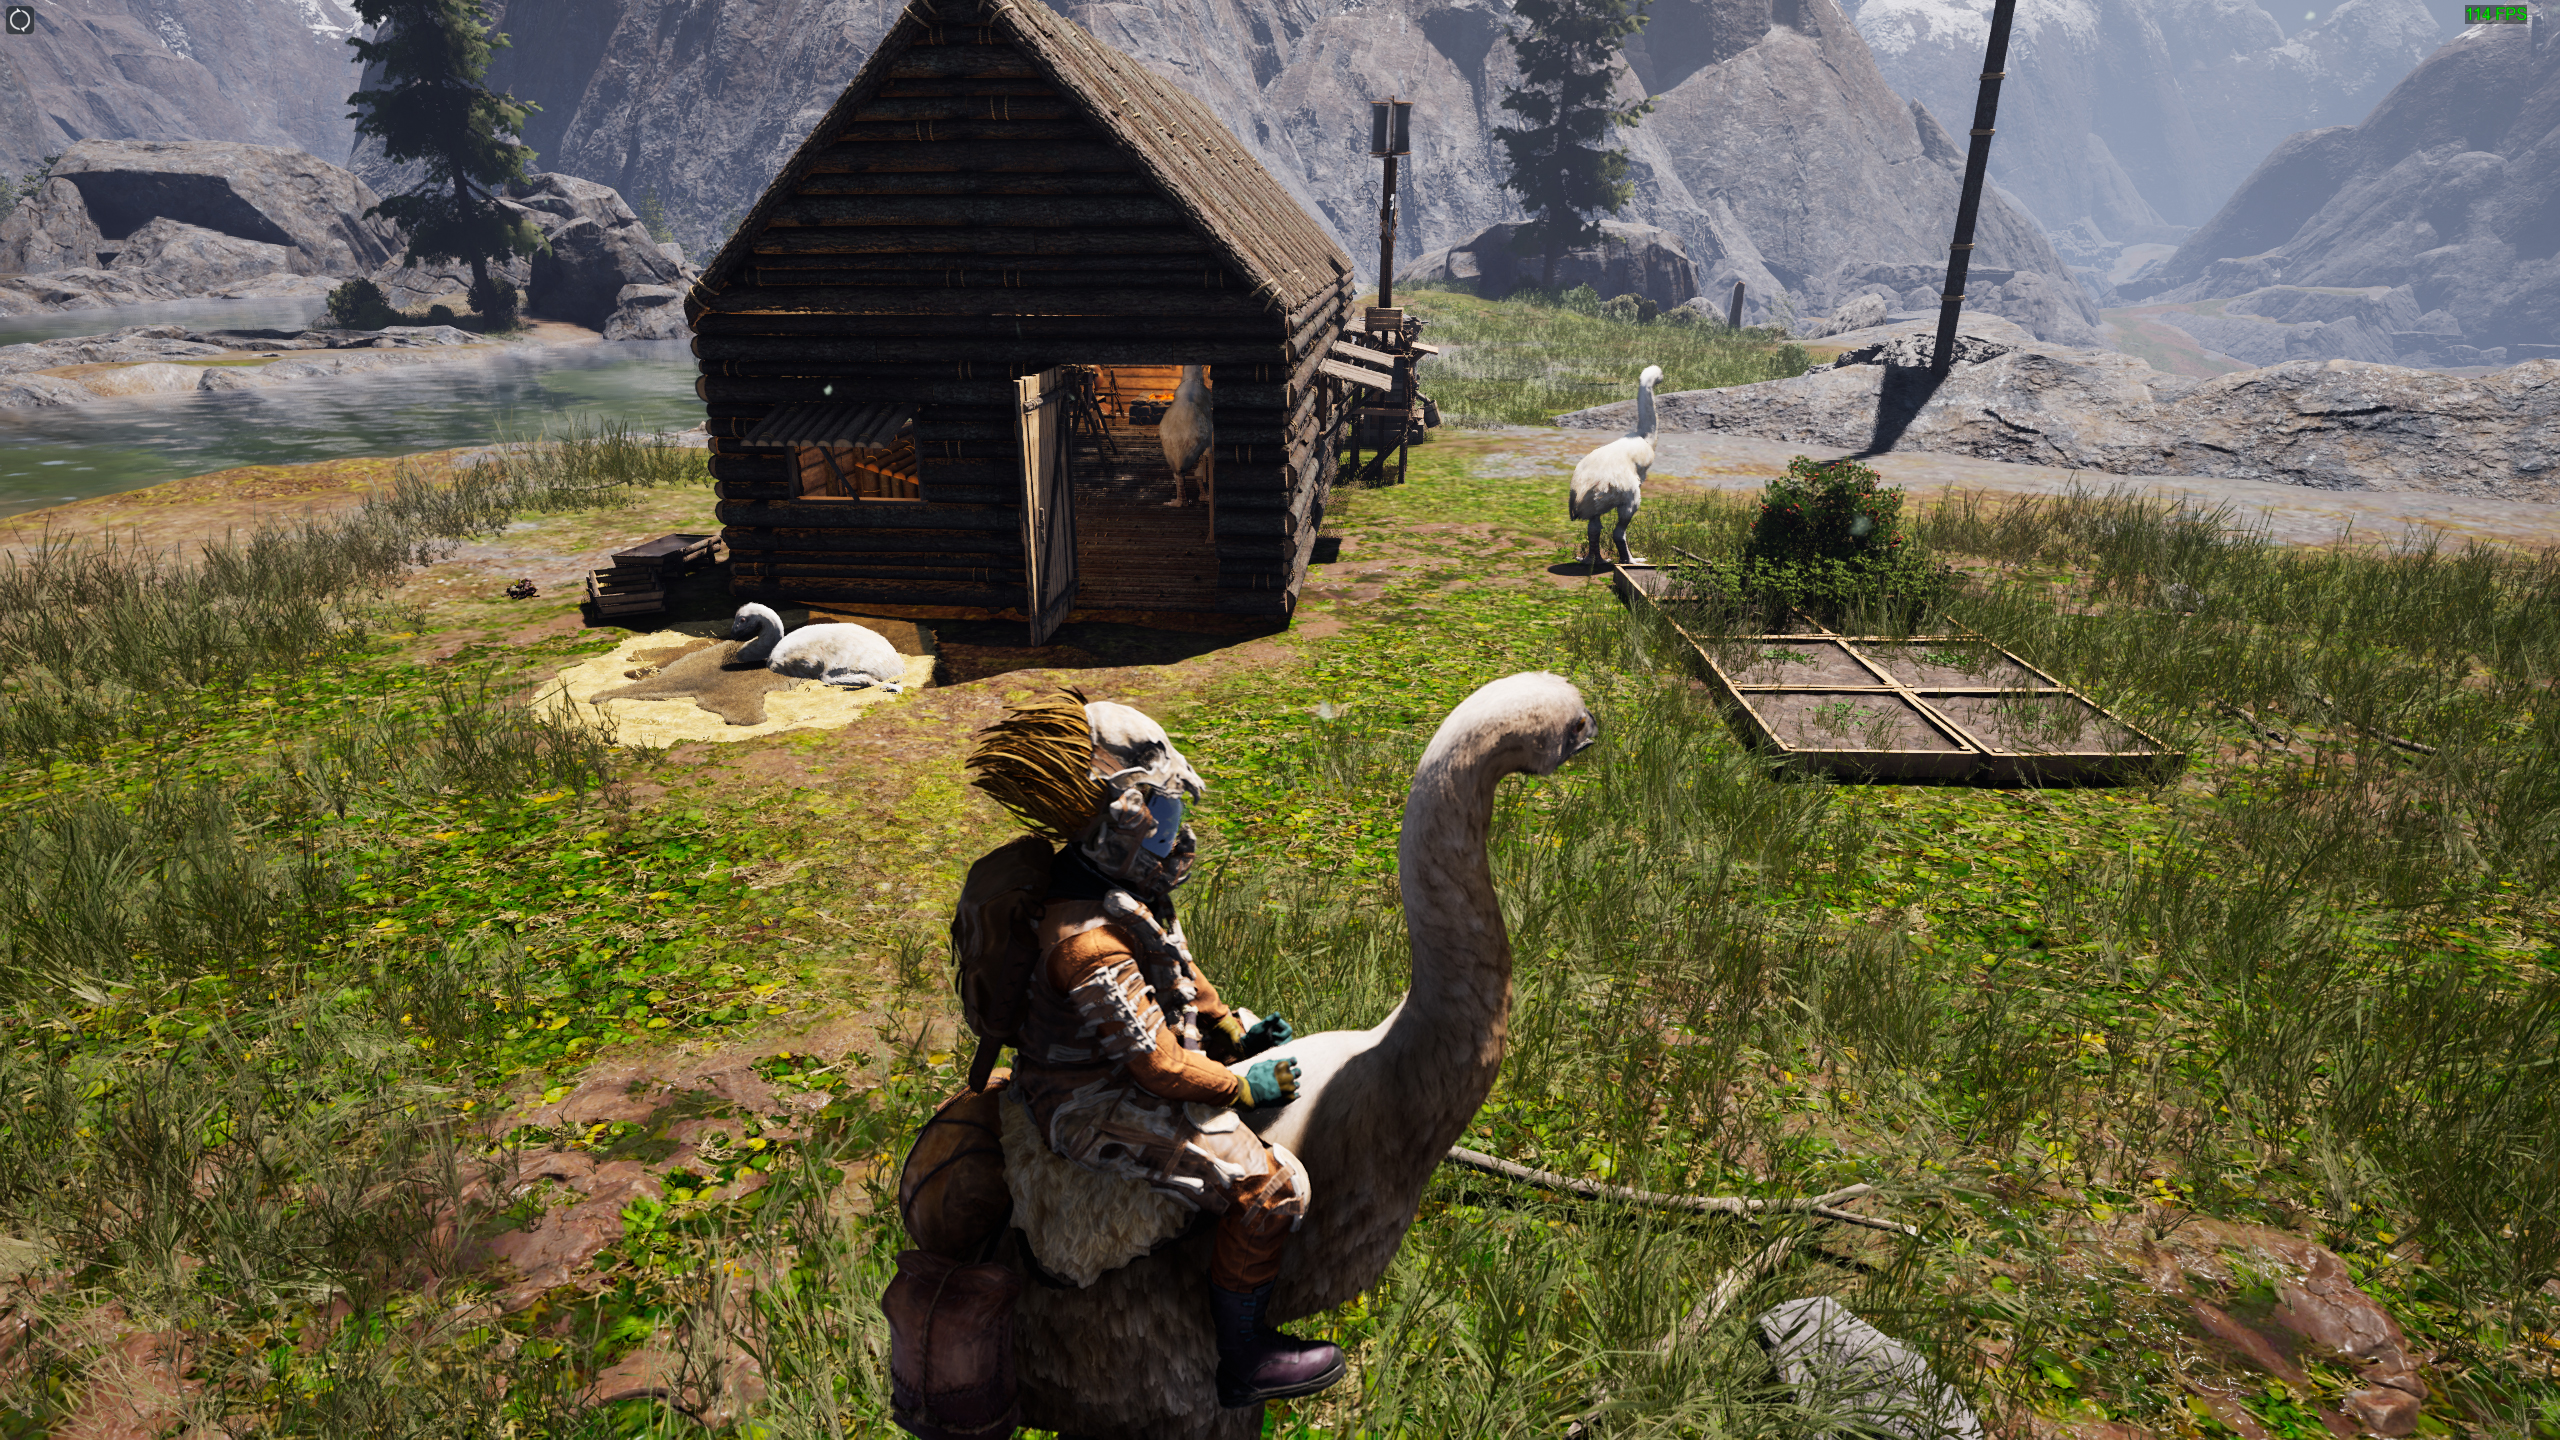 Eine Person sitzt auf einem riesigen Vogel in der Nähe einer Holzhütte, in deren Nähe sich andere große Vögel befinden